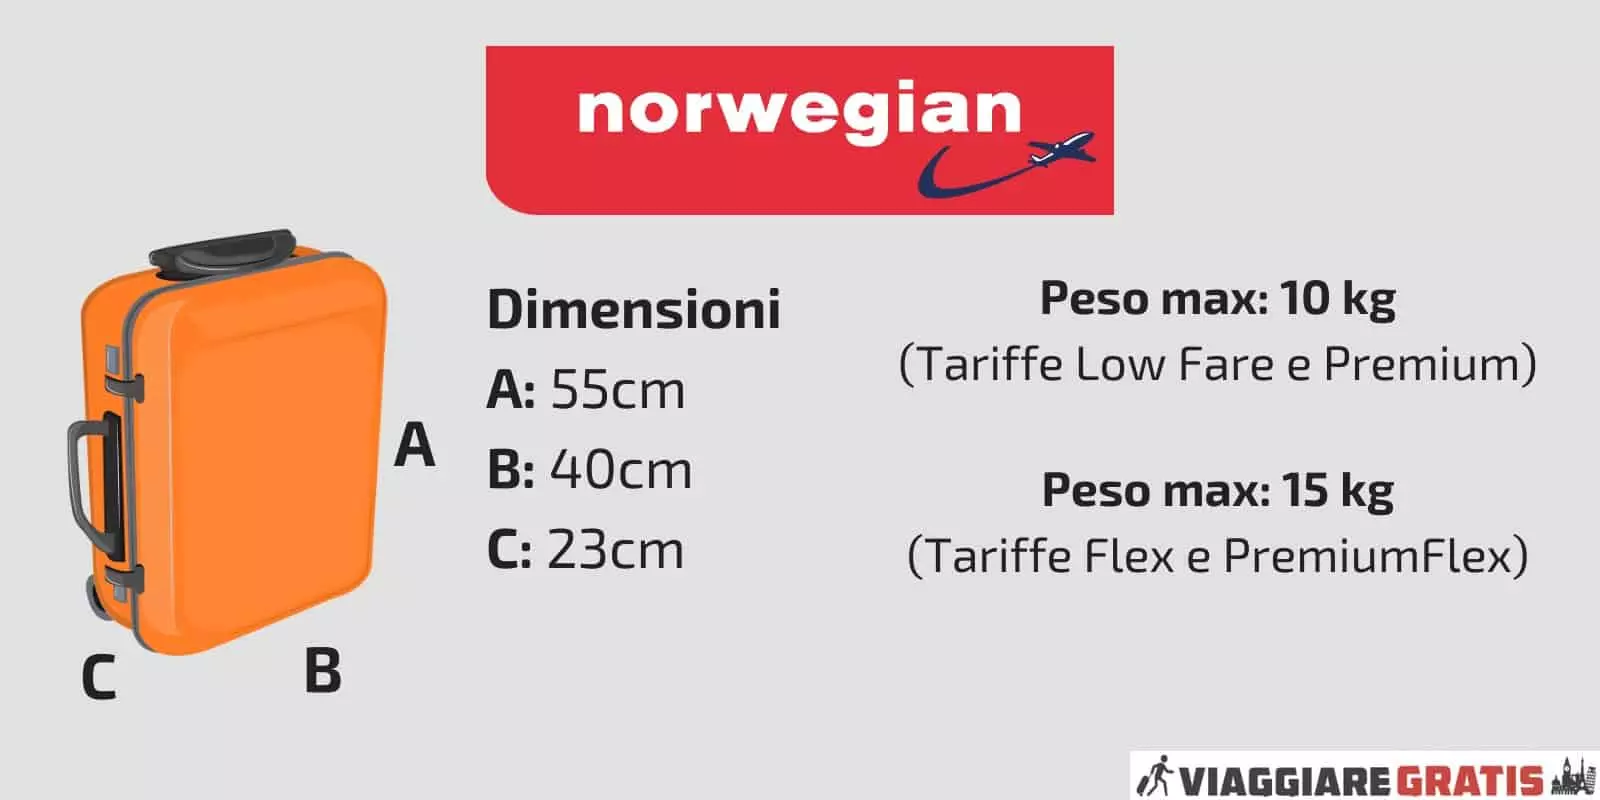 Авиакомпания norwegian air shuttle — куда летает, парк самолетов, отзывы